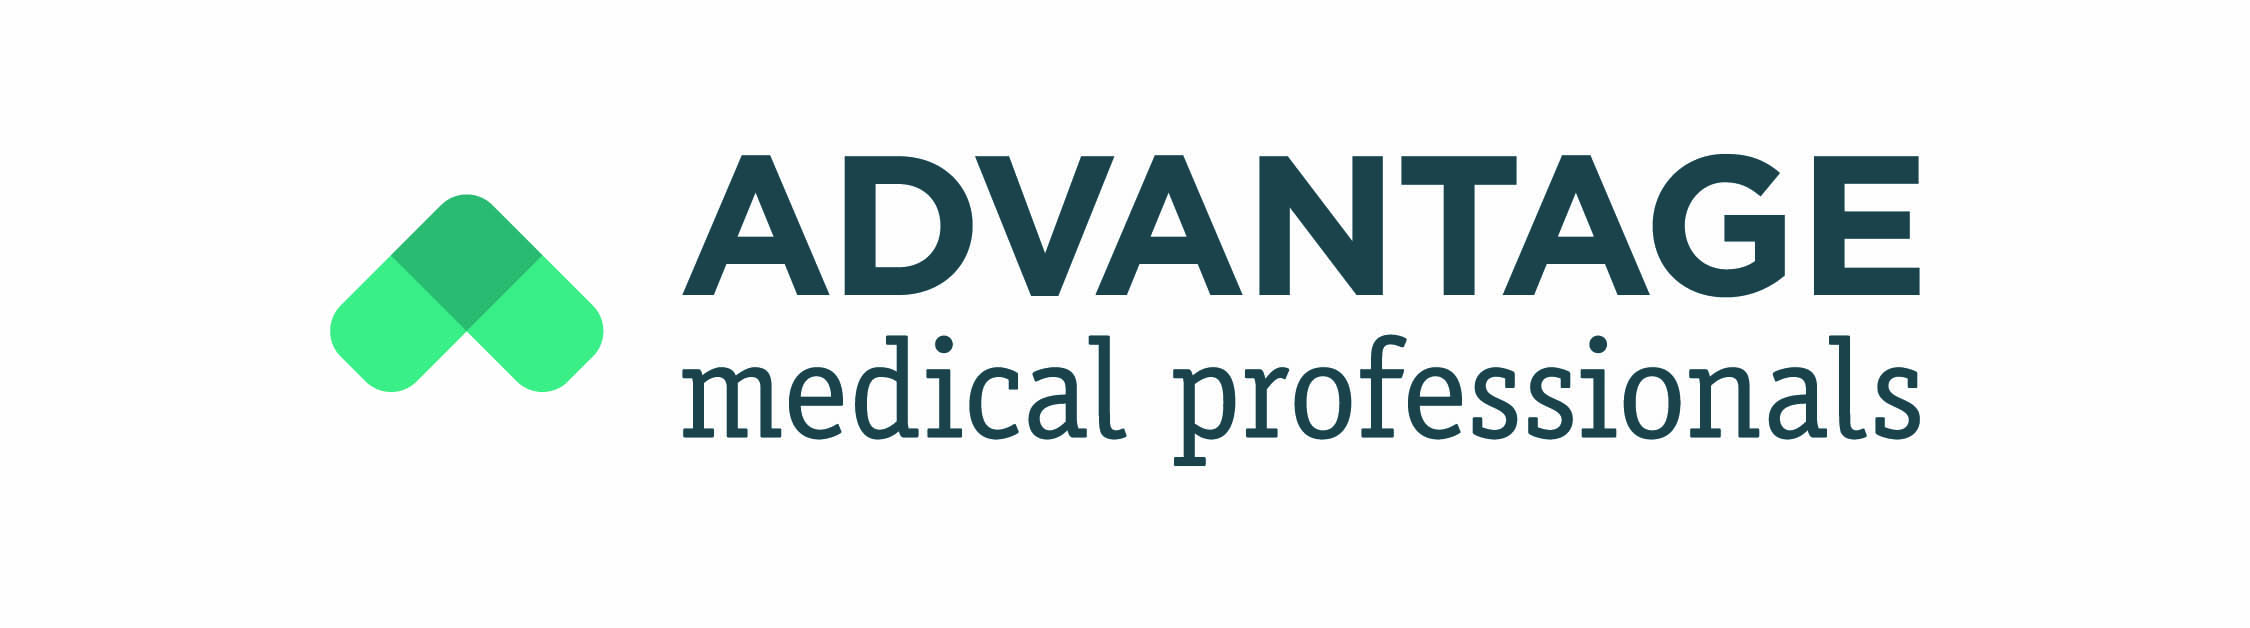 Advantage Medical Professionals